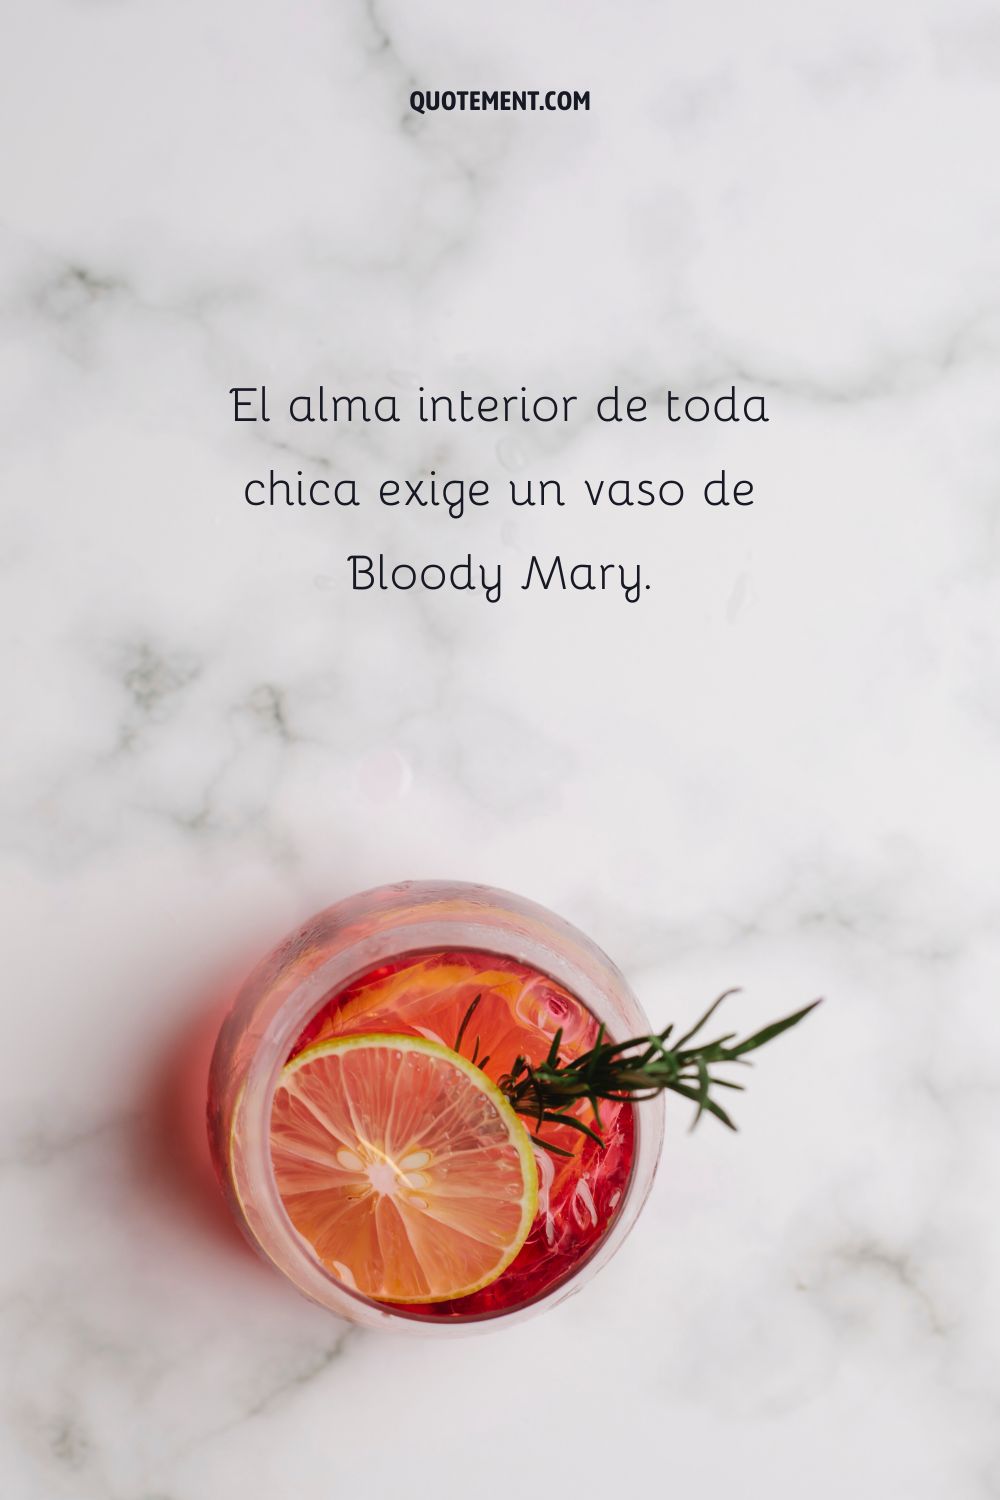 El alma interior de toda chica exige un vaso de Bloody Mary.